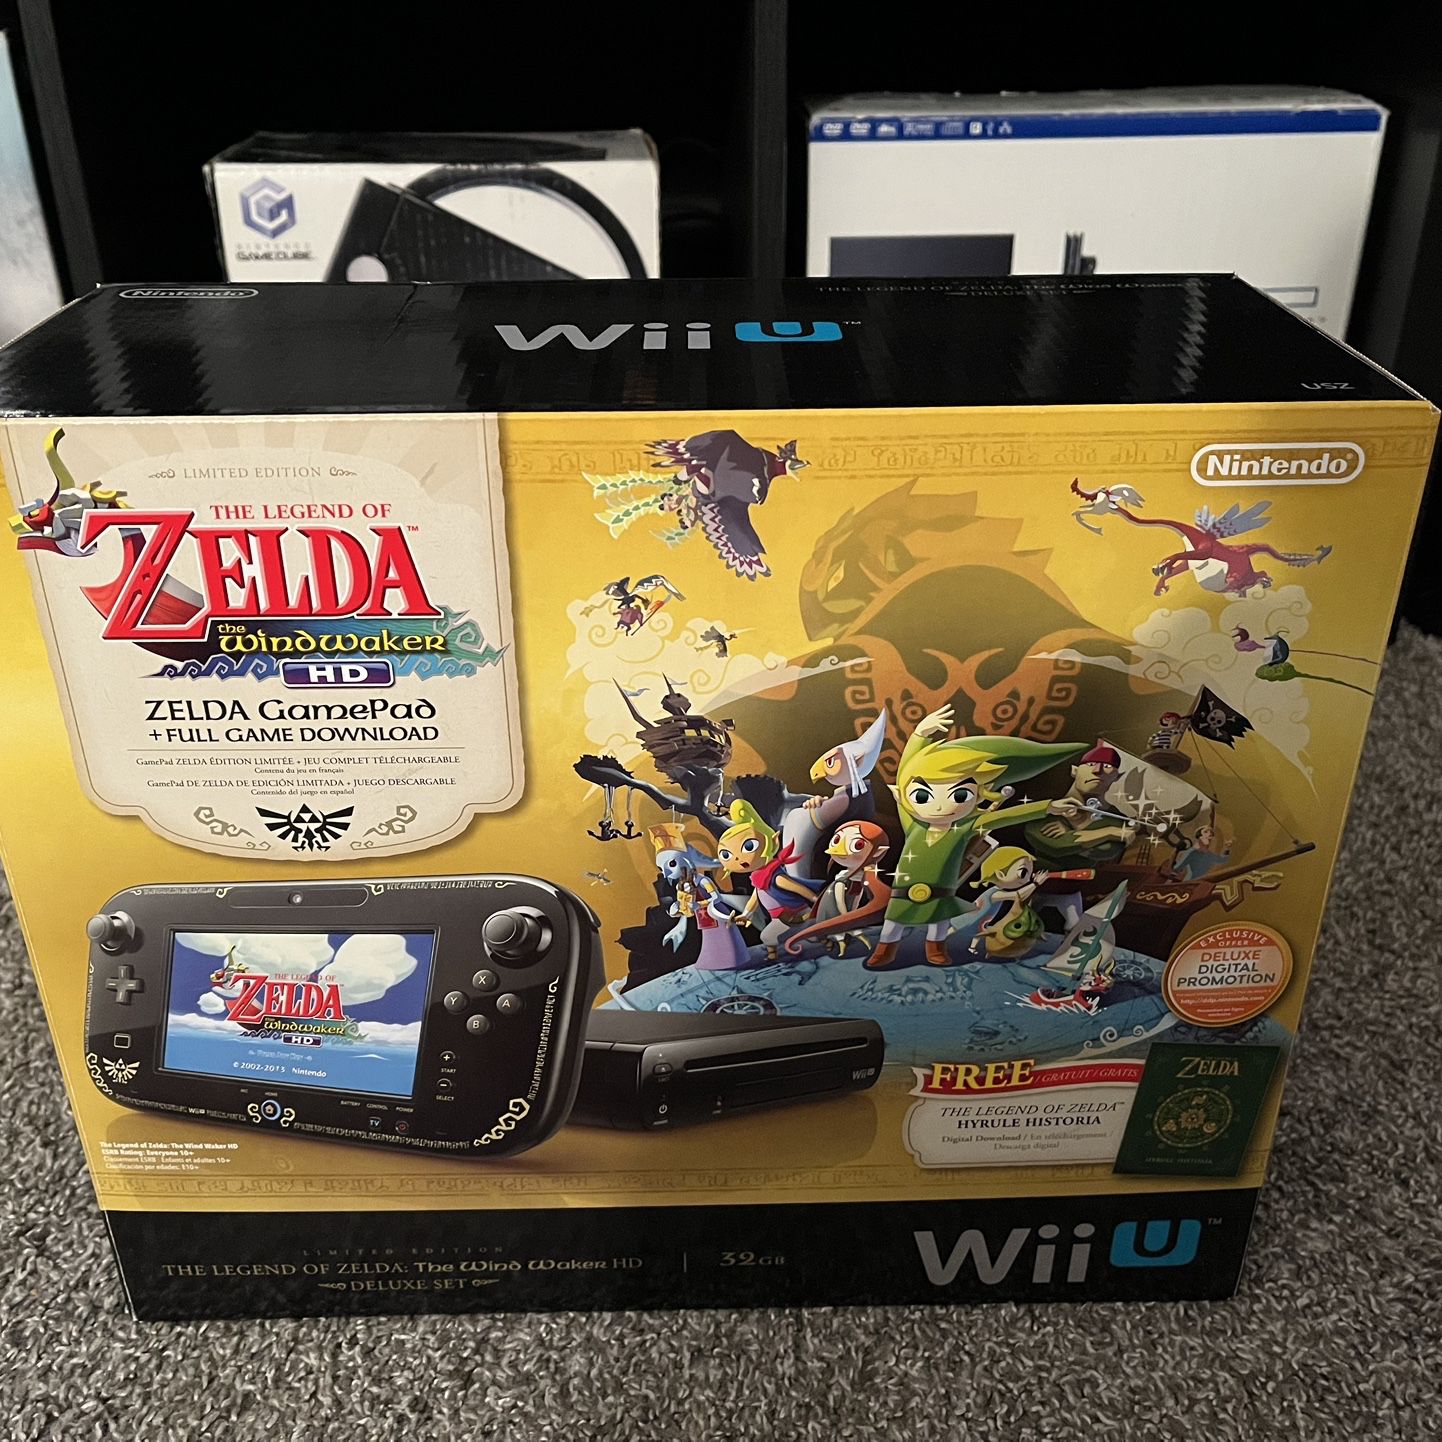 The Legend of Zelda: Wind Waker HD Wii U Deluxe Set